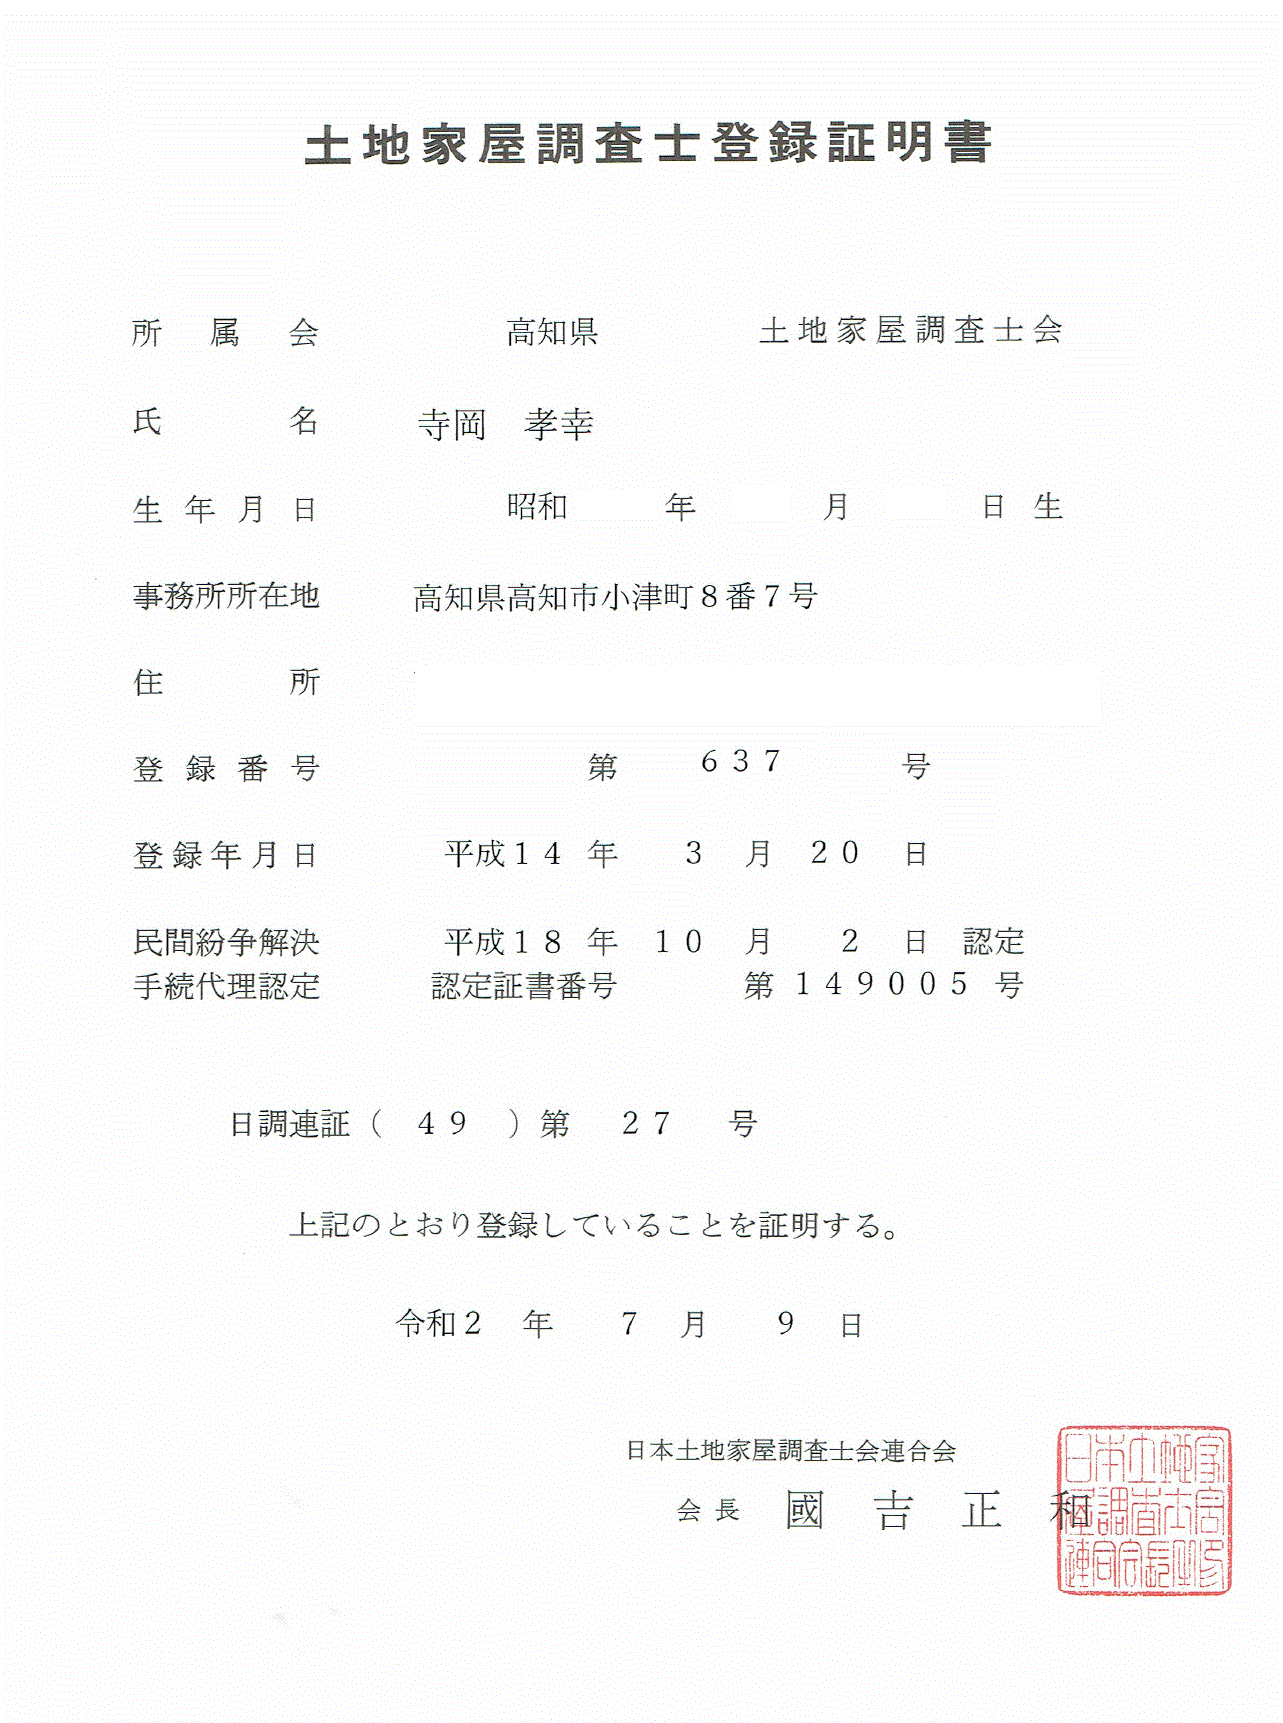 筆者（寺岡孝幸）が、日本土地家屋調査士連合会会長の國吉正和から証明された土地家屋調査士登録証明書の写真